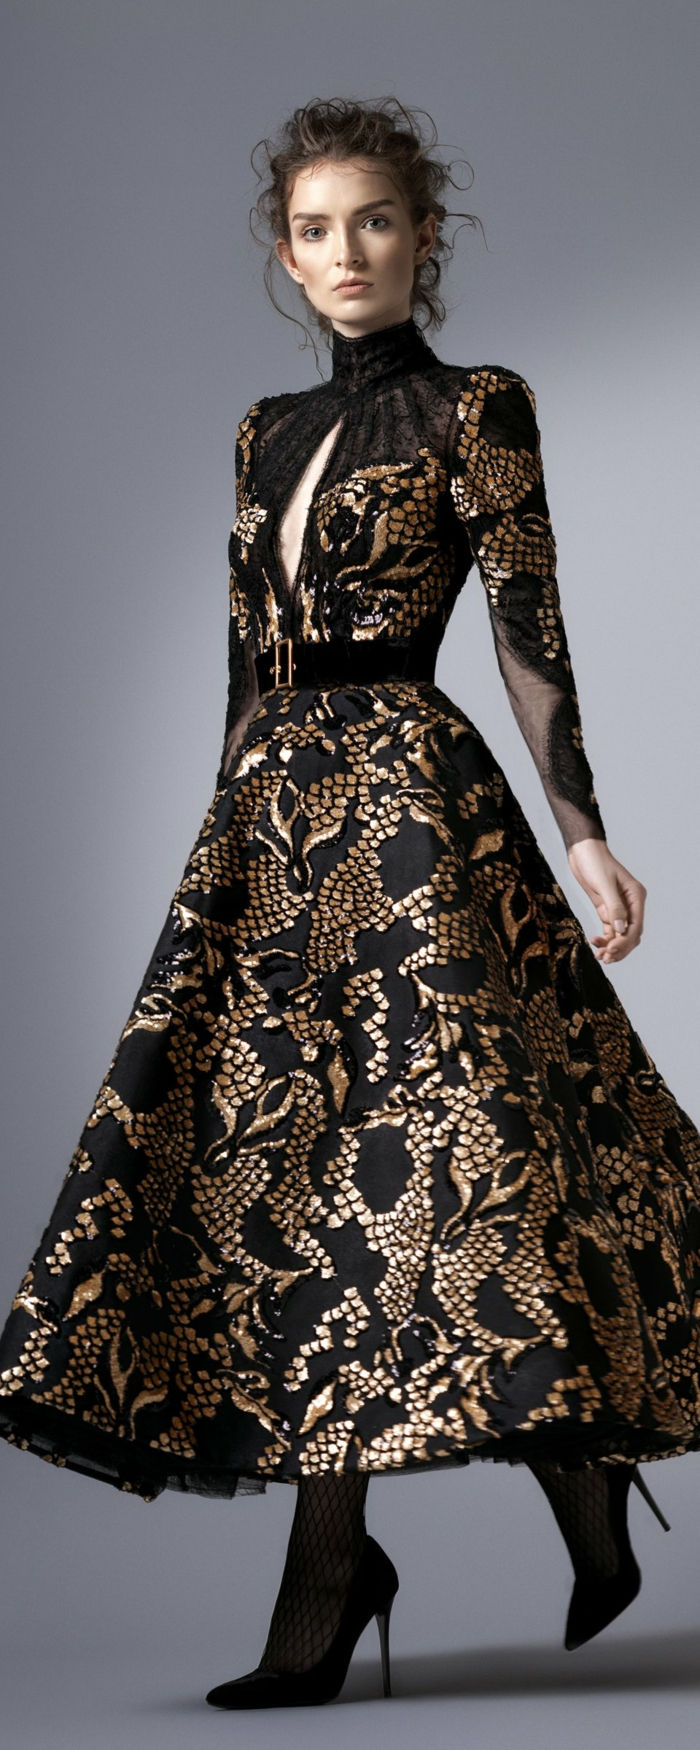 Elegantné dámske módy - dlhé šaty v čiernej a zlatej farbe so zlatou Semtgürtel s uzatváracím Pollokragen a otvorená na hrudi, priepustné Hochsteckfrisur pre kučeravé vlasy, sieťované pančuchy a čierne topánky na podpätku